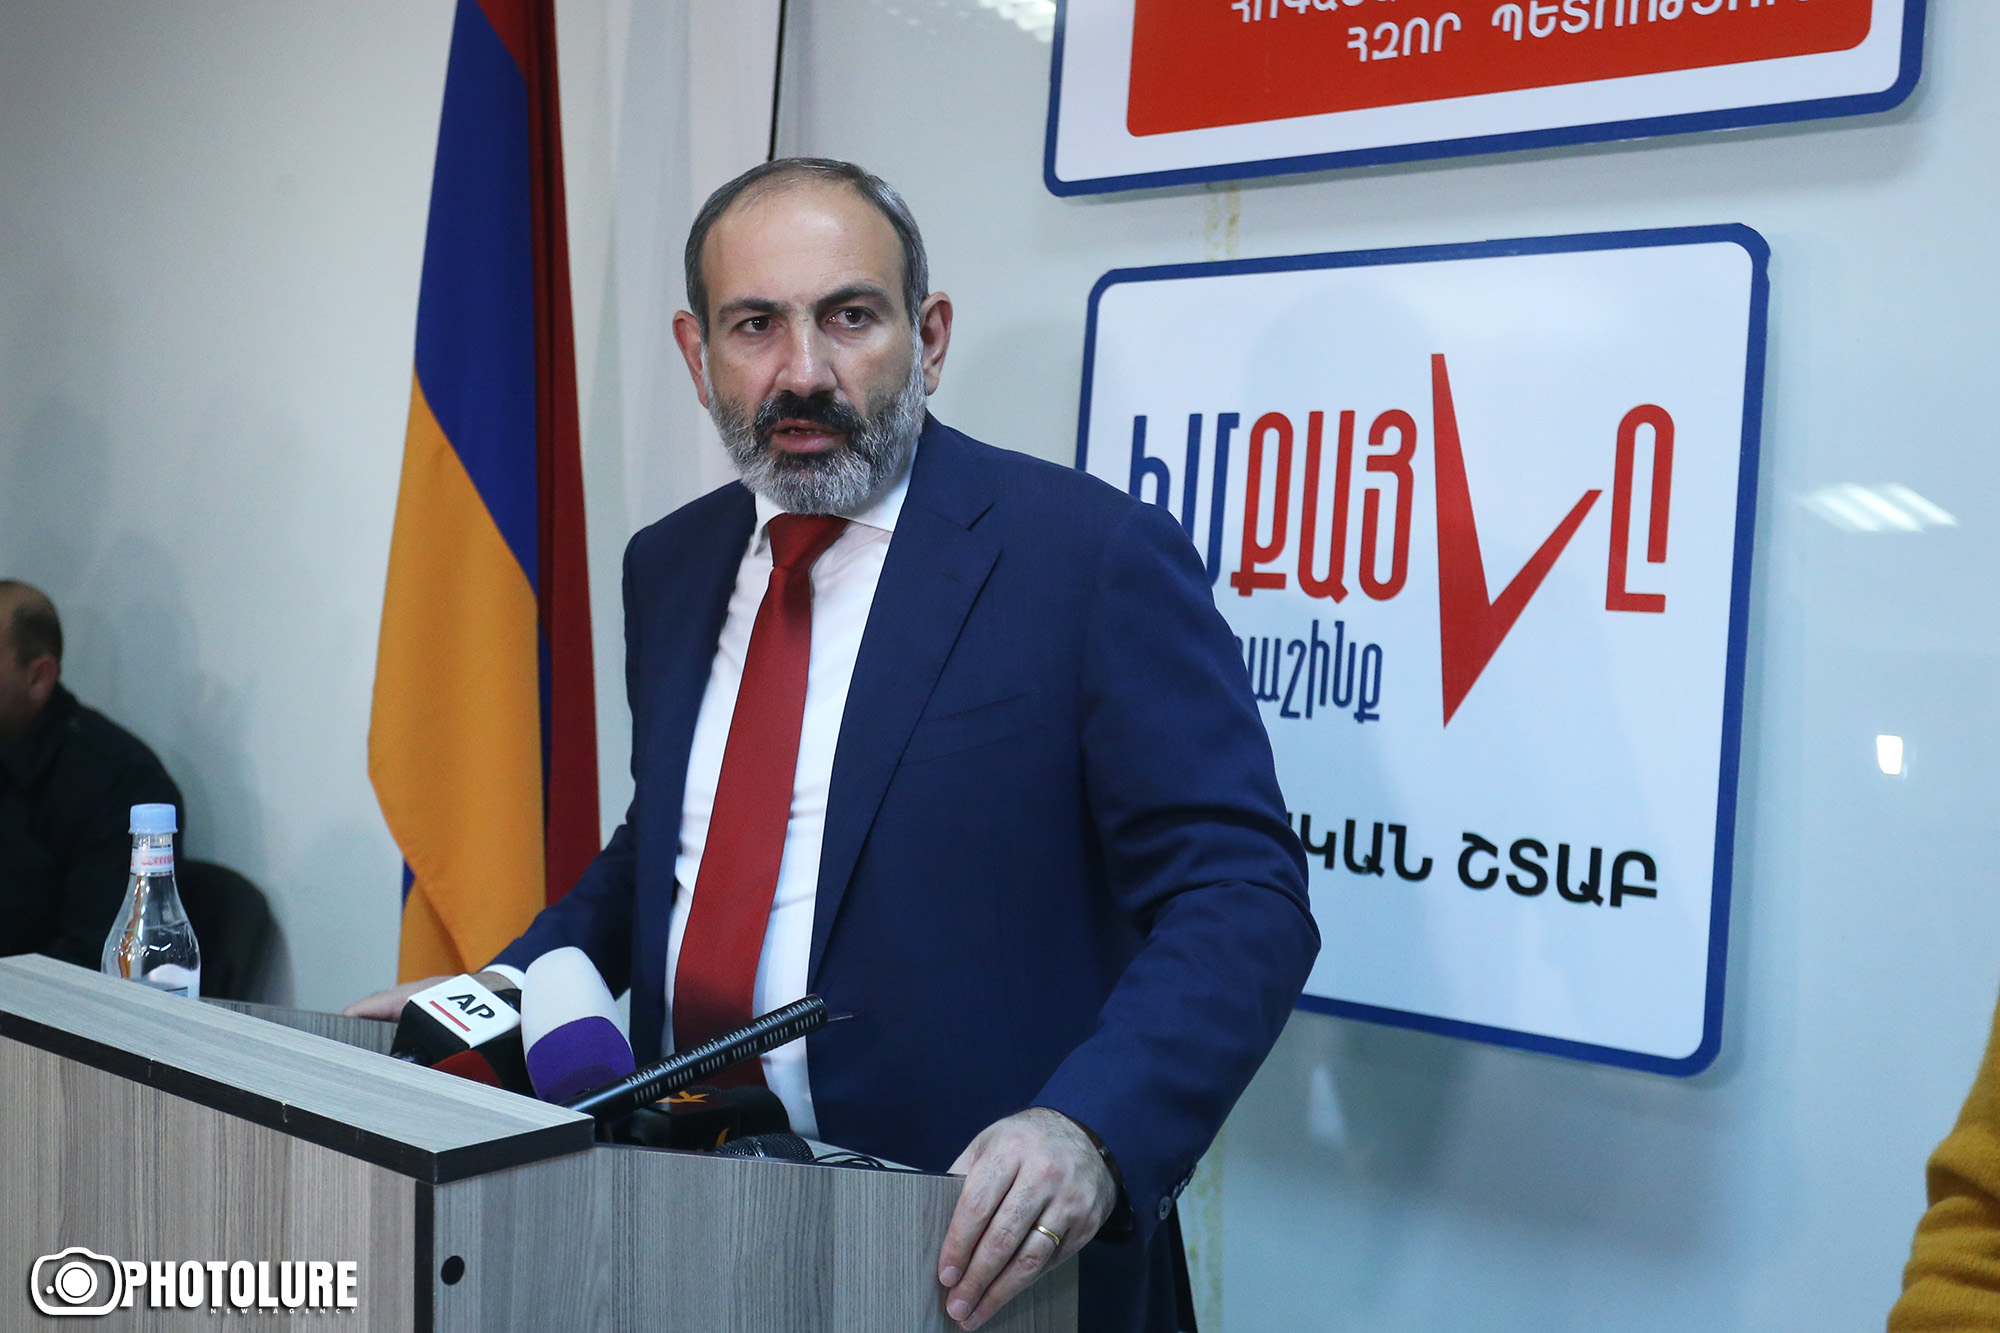 Граждане Армении сформируют в парламенте революционное большинство - Никол Пашинян